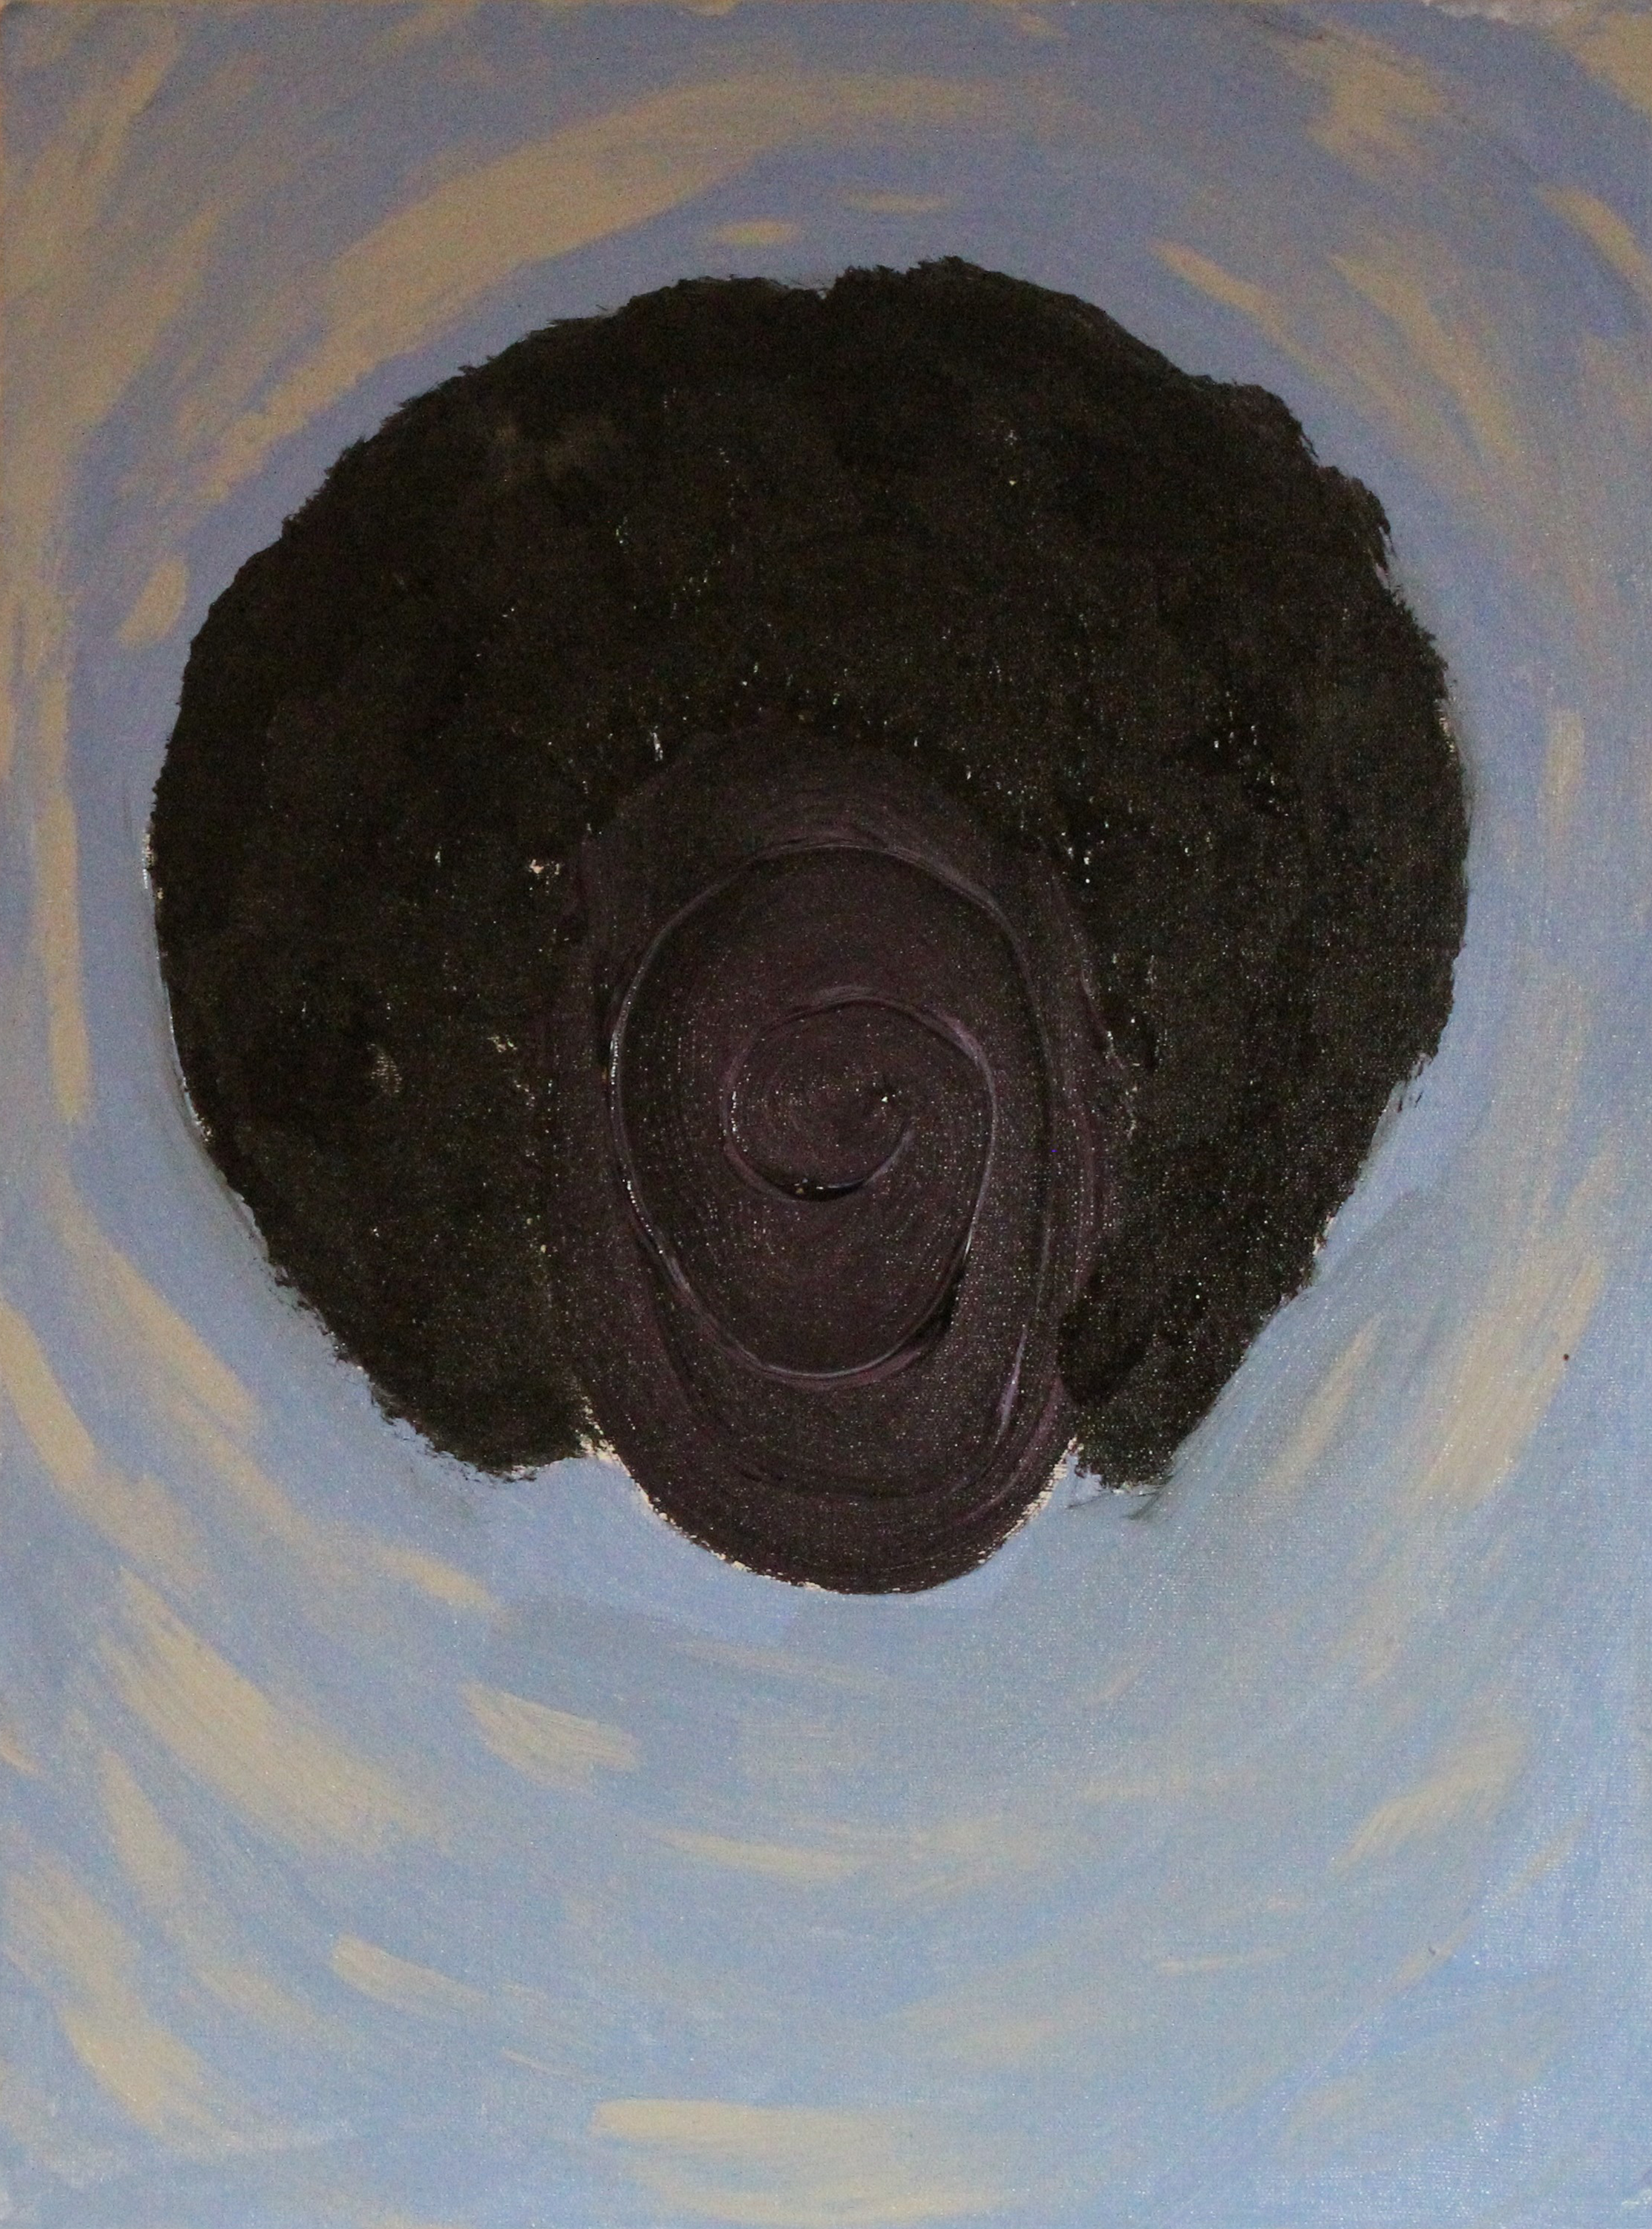 Foto da obra "Autorretrato", do artista Di França. Um rosto negro, em forma de vórtice ou elipse, com cabelo black power. 